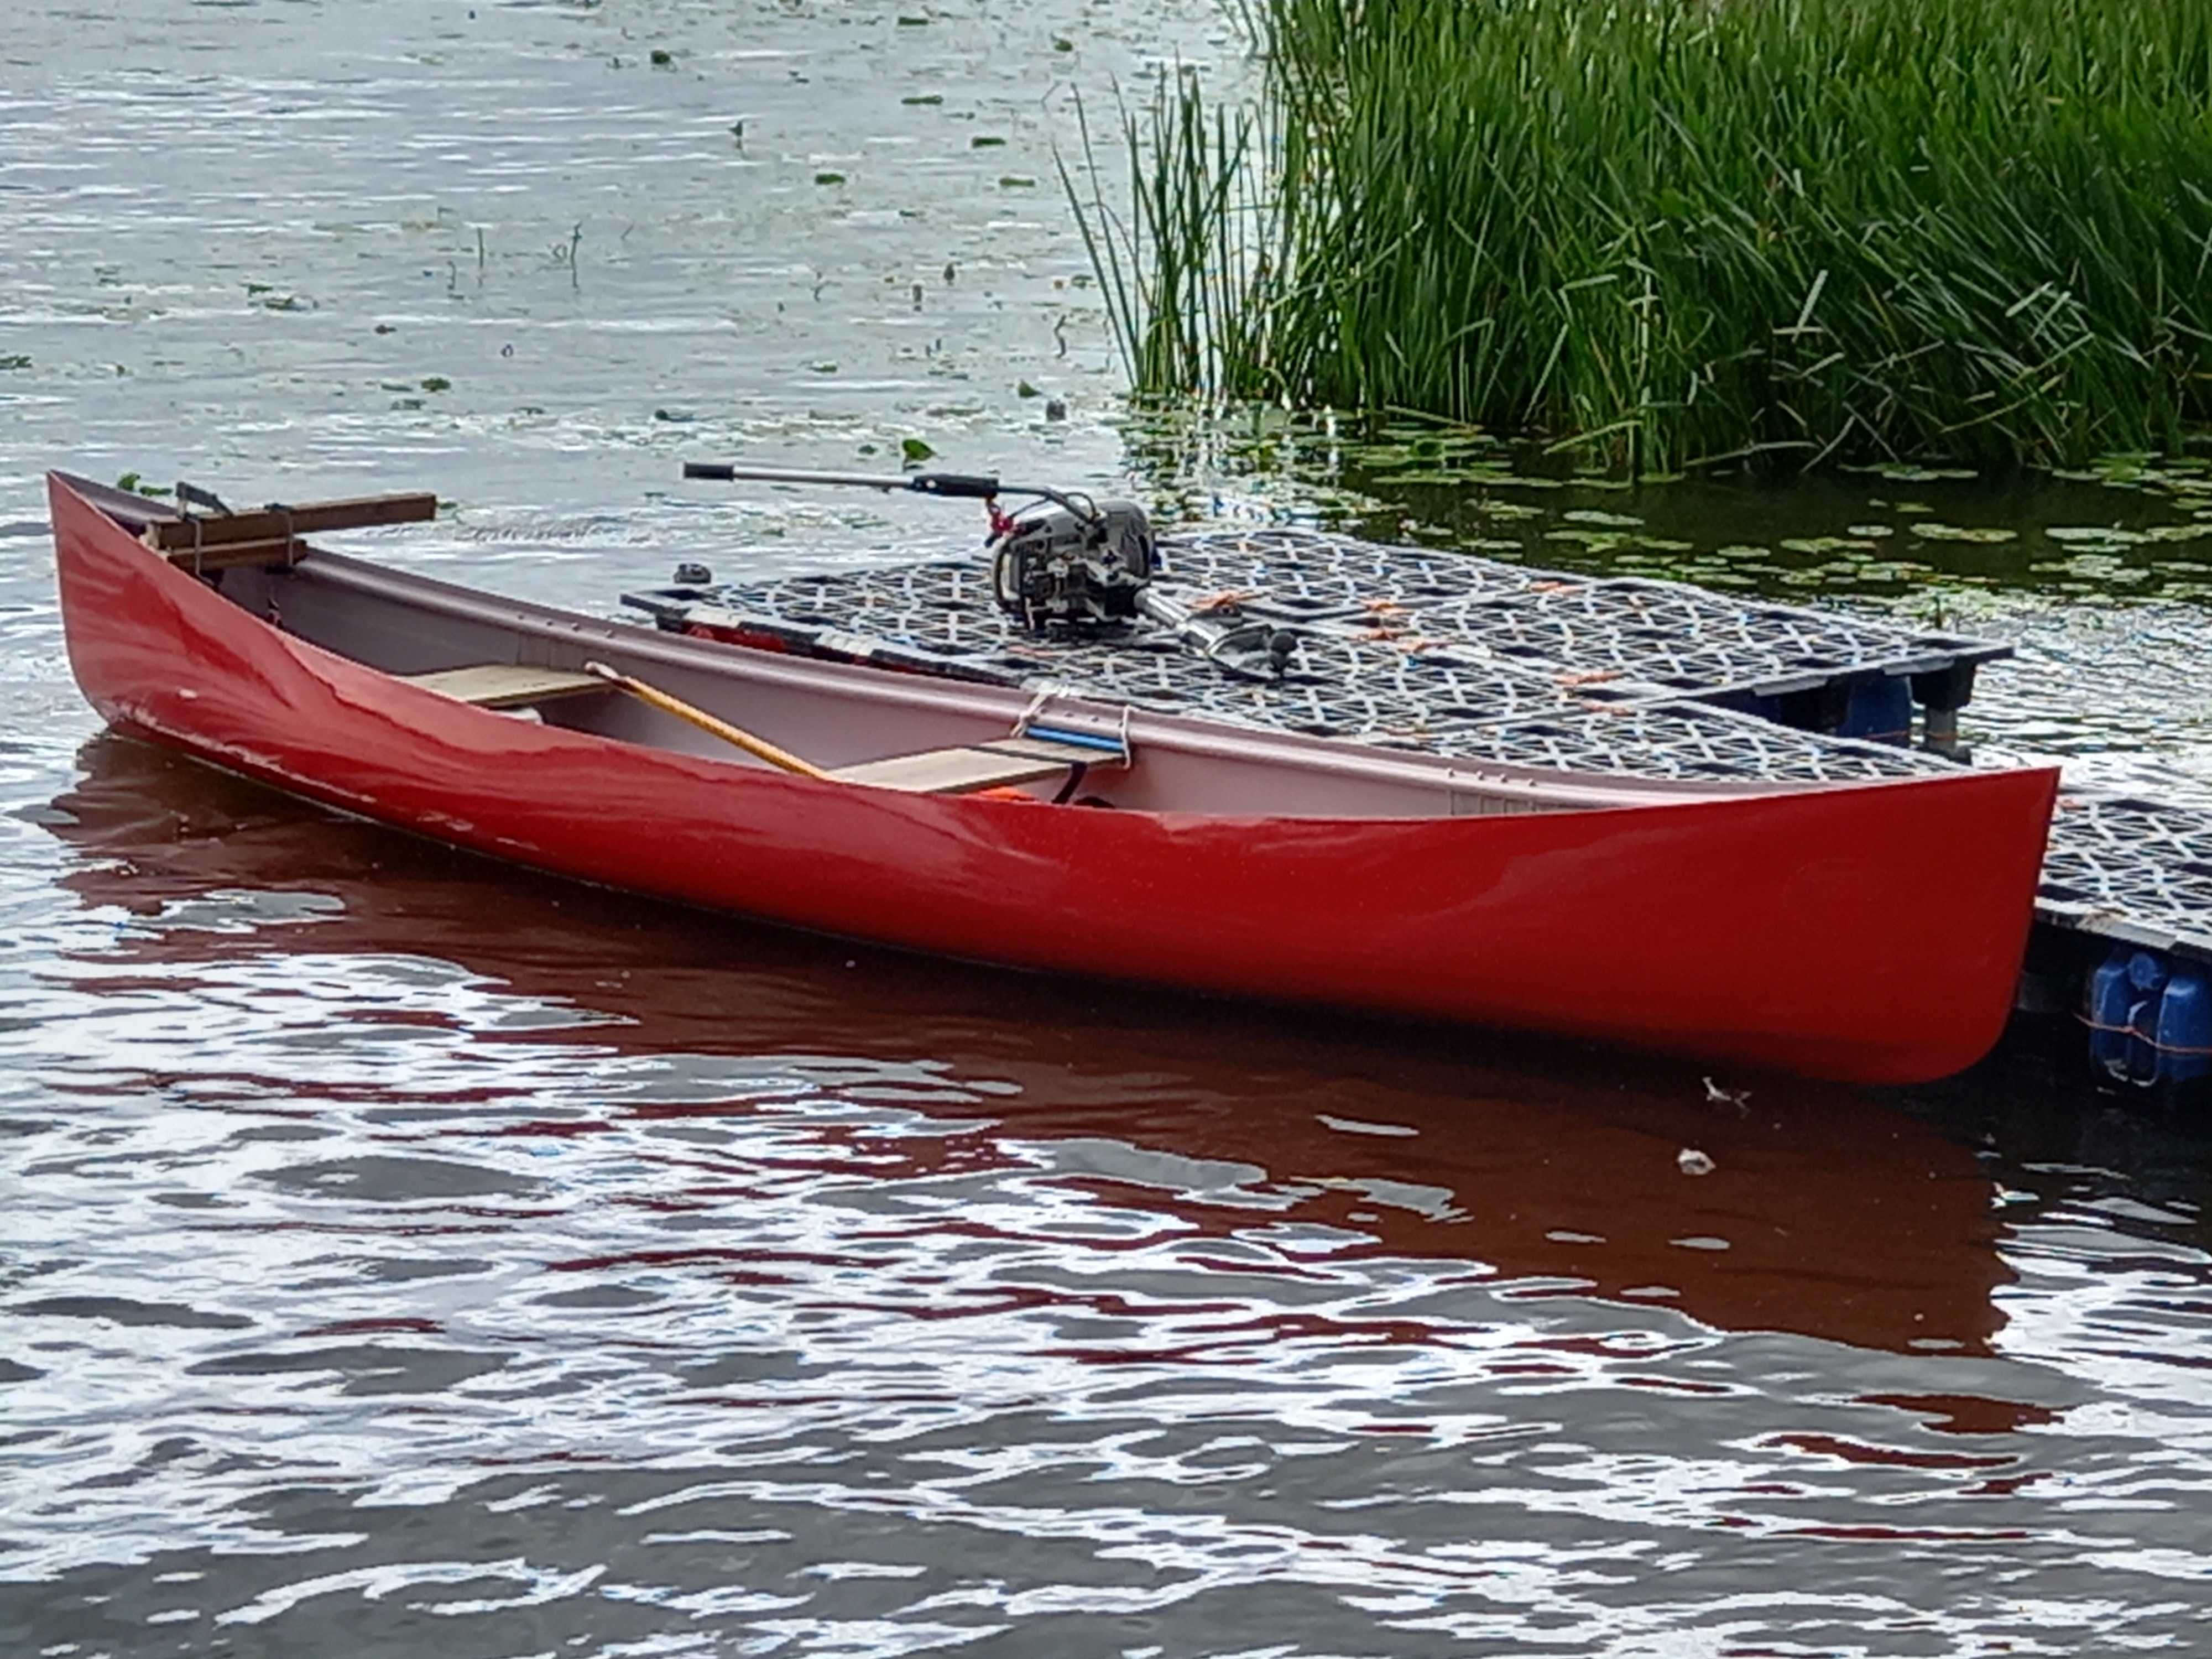 kanadyjka canoe kajak dł 5,3m duża wygodna rodzinna